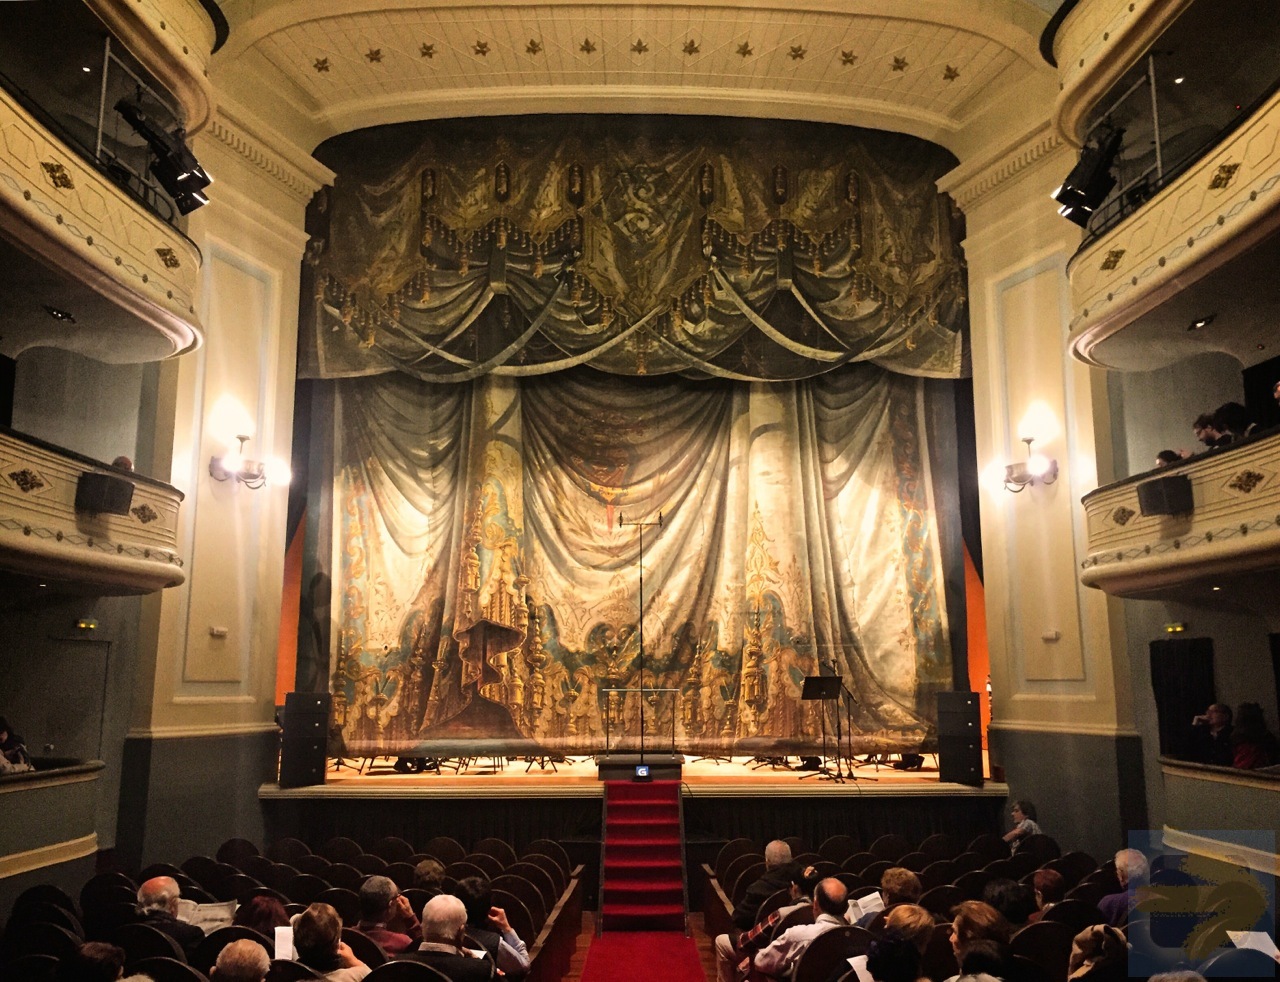 Lovely Teatro Principal on Rua Nova. Santiago de Compostela | Camino de Santiago Forum